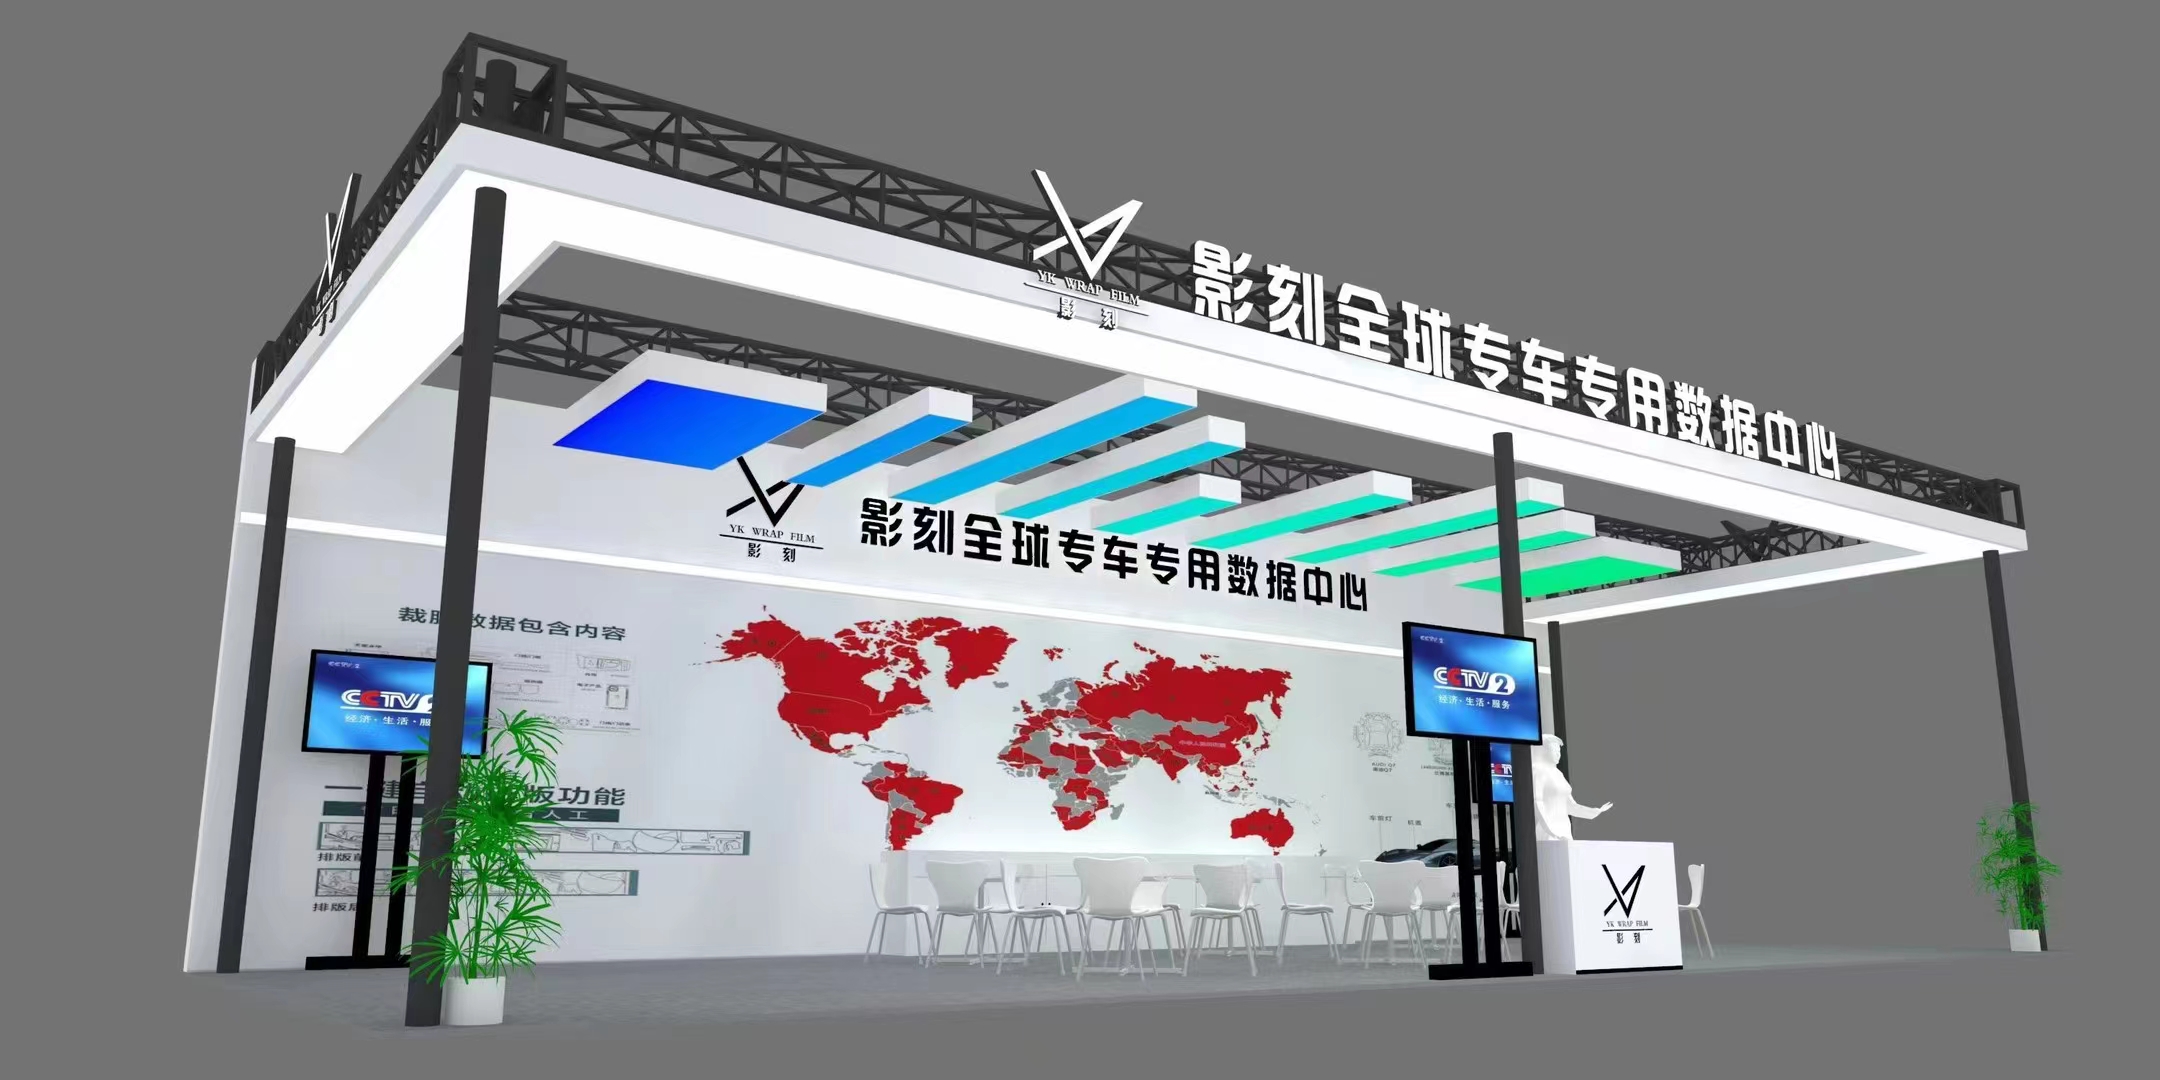 Yink дебютирует в современном международном выставочном центре Гуандуна в 2023 году, чтобы продемонстрировать программное обеспечение для резки PPF (1A30)